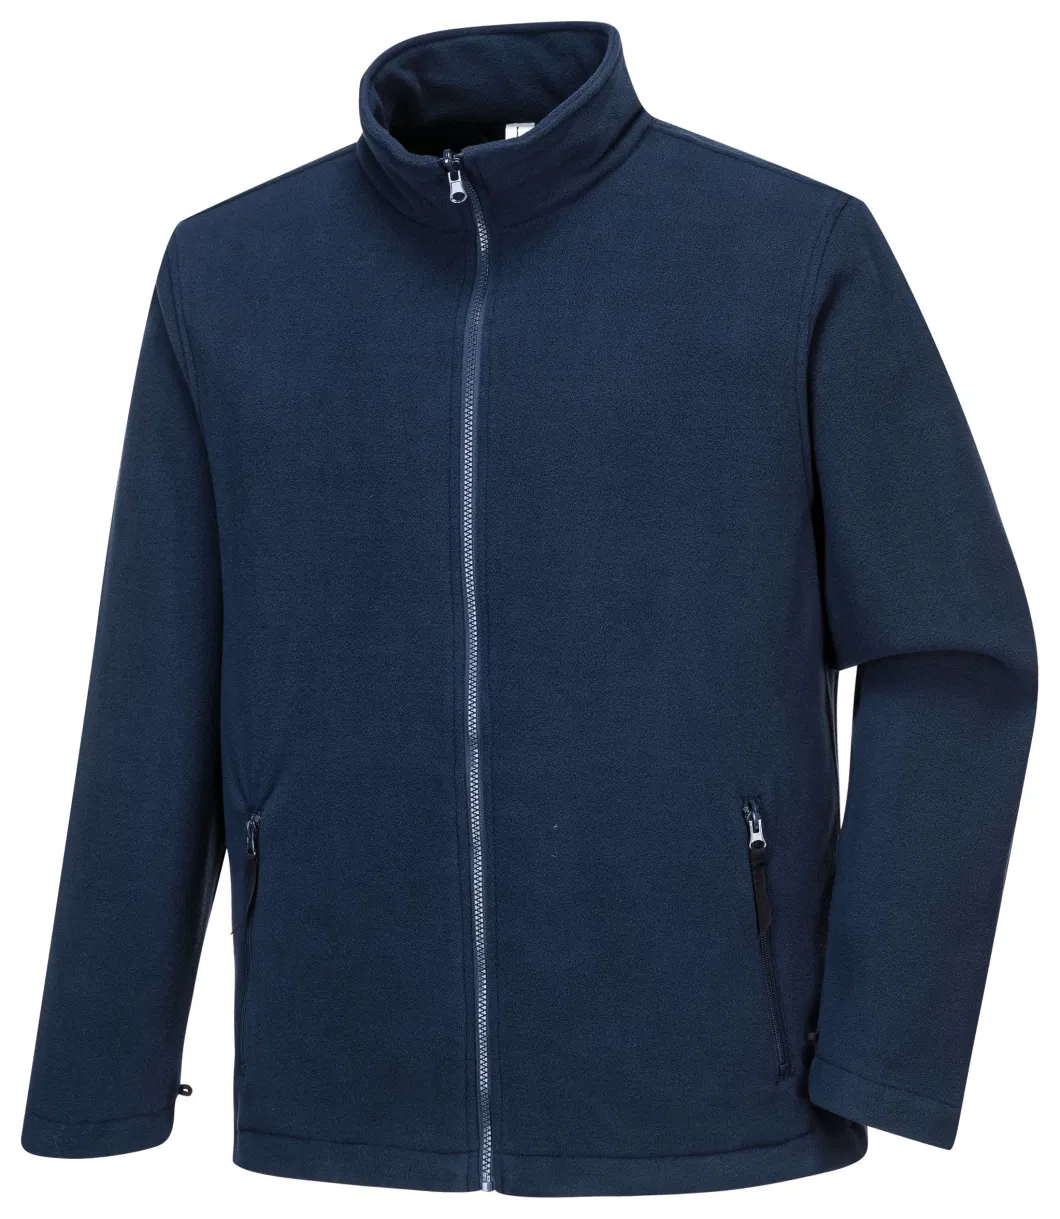 Customized Waterproof Winter Outdoor Sports Wear 3 in 1 Breathable Jacket